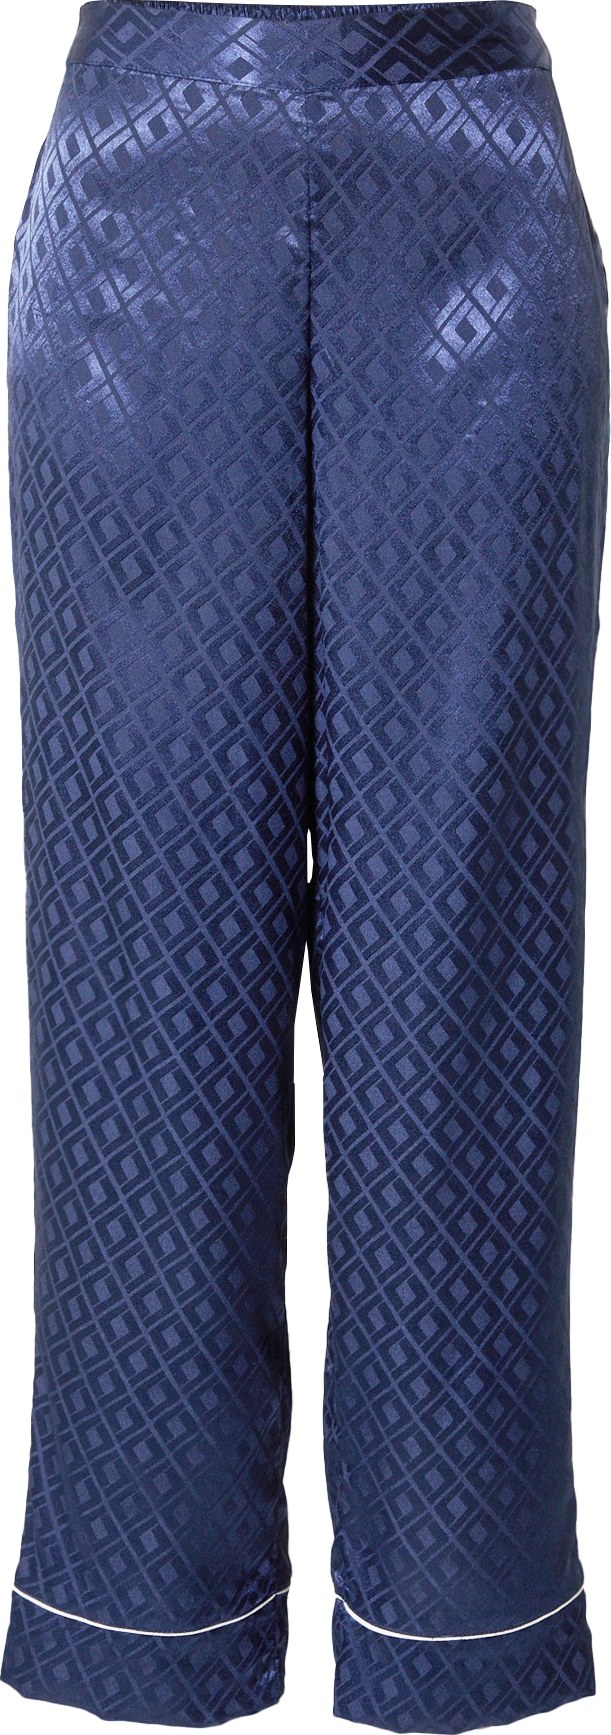 River Island Pyžamové kalhoty ultramarínová modř / tmavě modrá / bílá